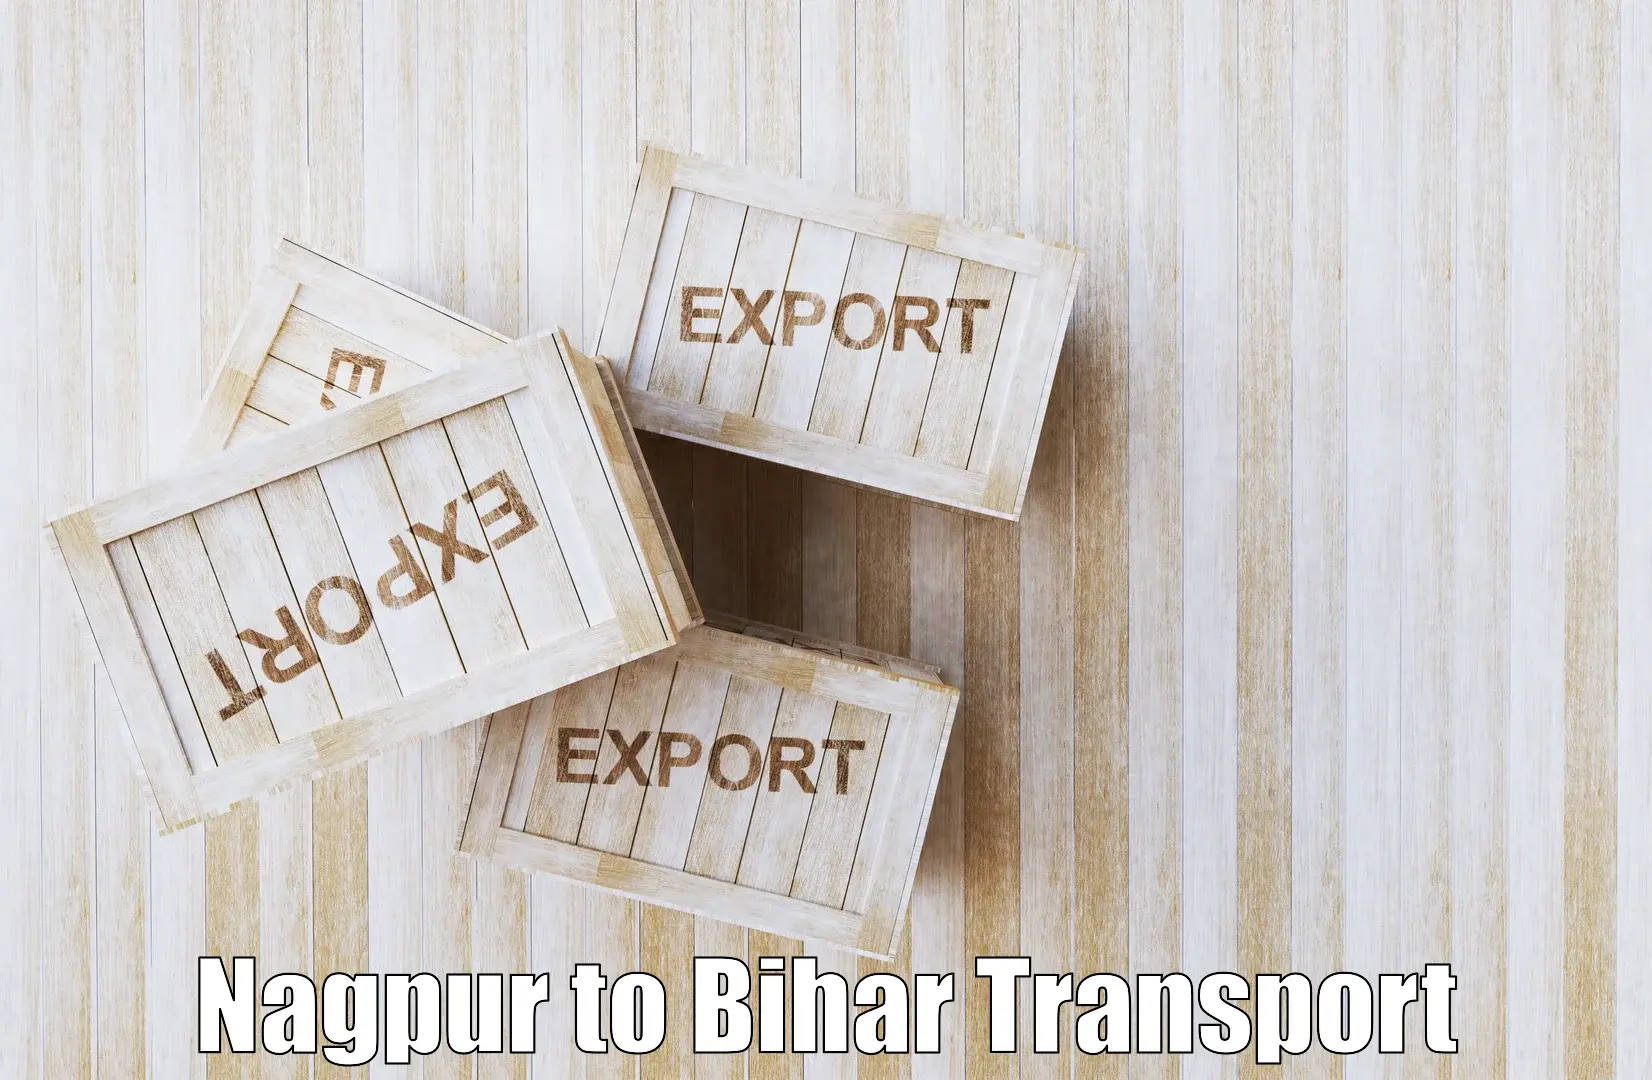 Transportation services Nagpur to Jaynagar